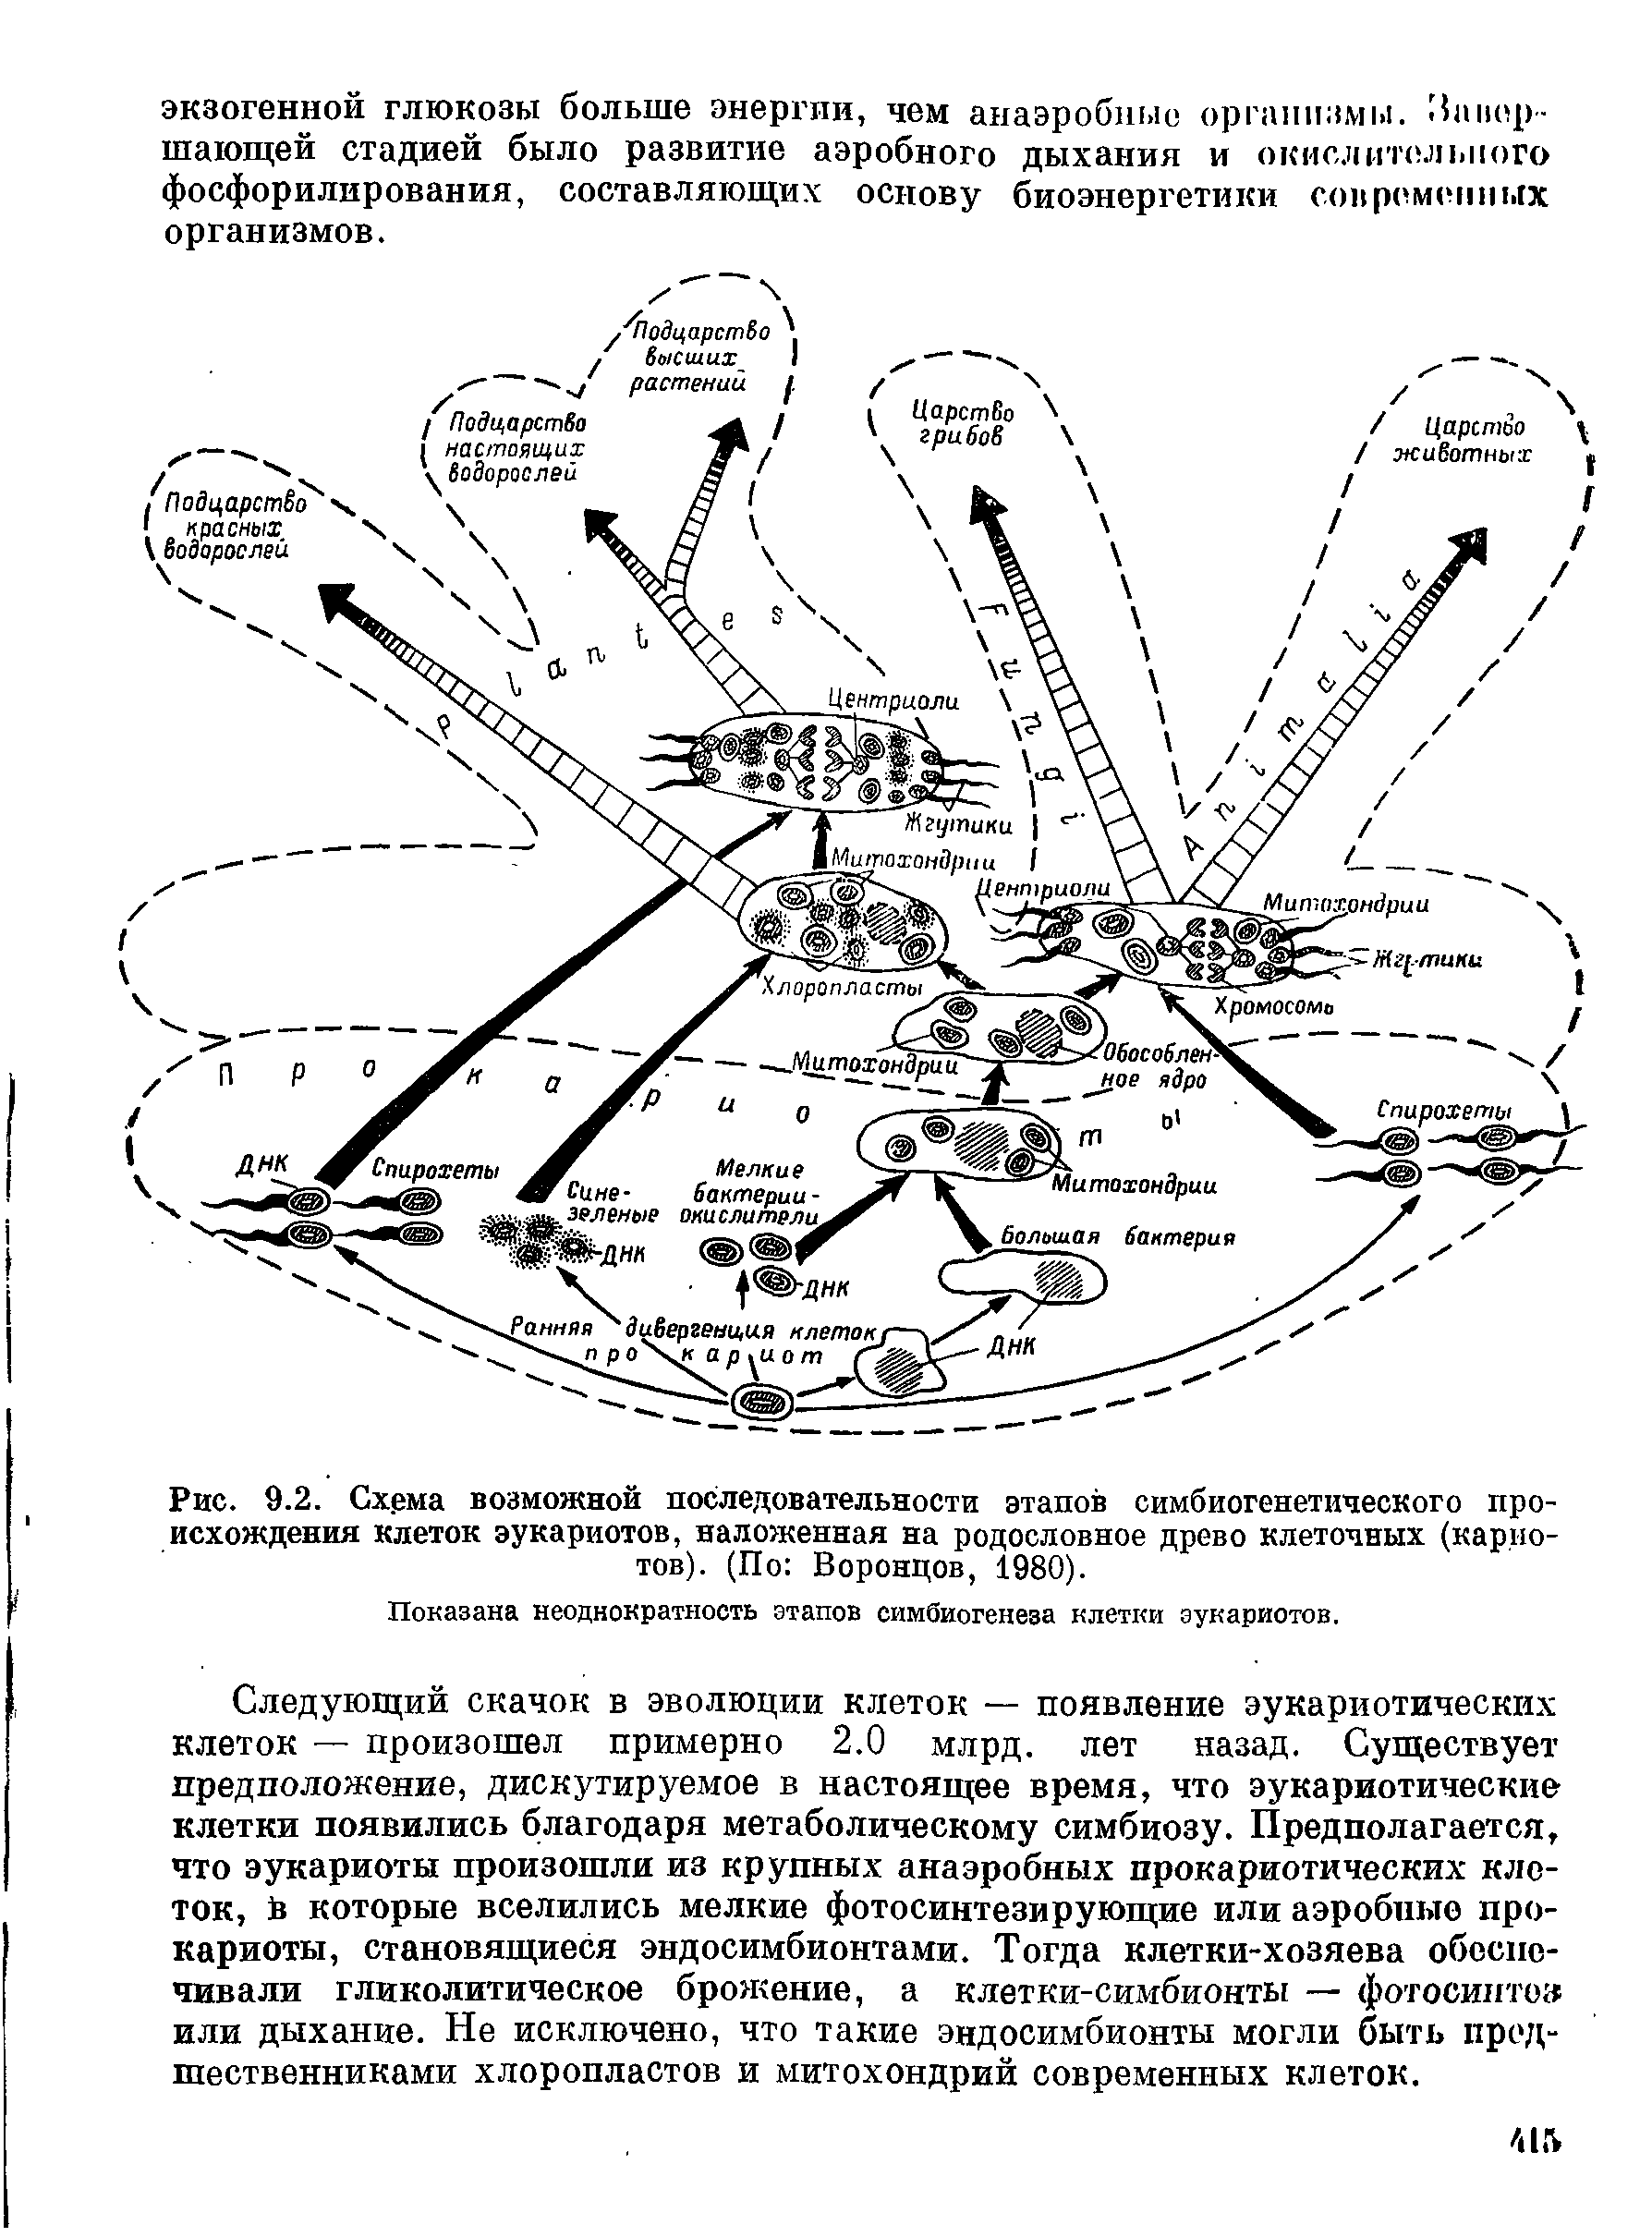 Рис. 9.2. Схема возможной последовательности этапов симбиогенетического происхождения клеток эукариотов, наложенная на родословное древо клеточных (карио-тов). (По Воронцов, 1980).